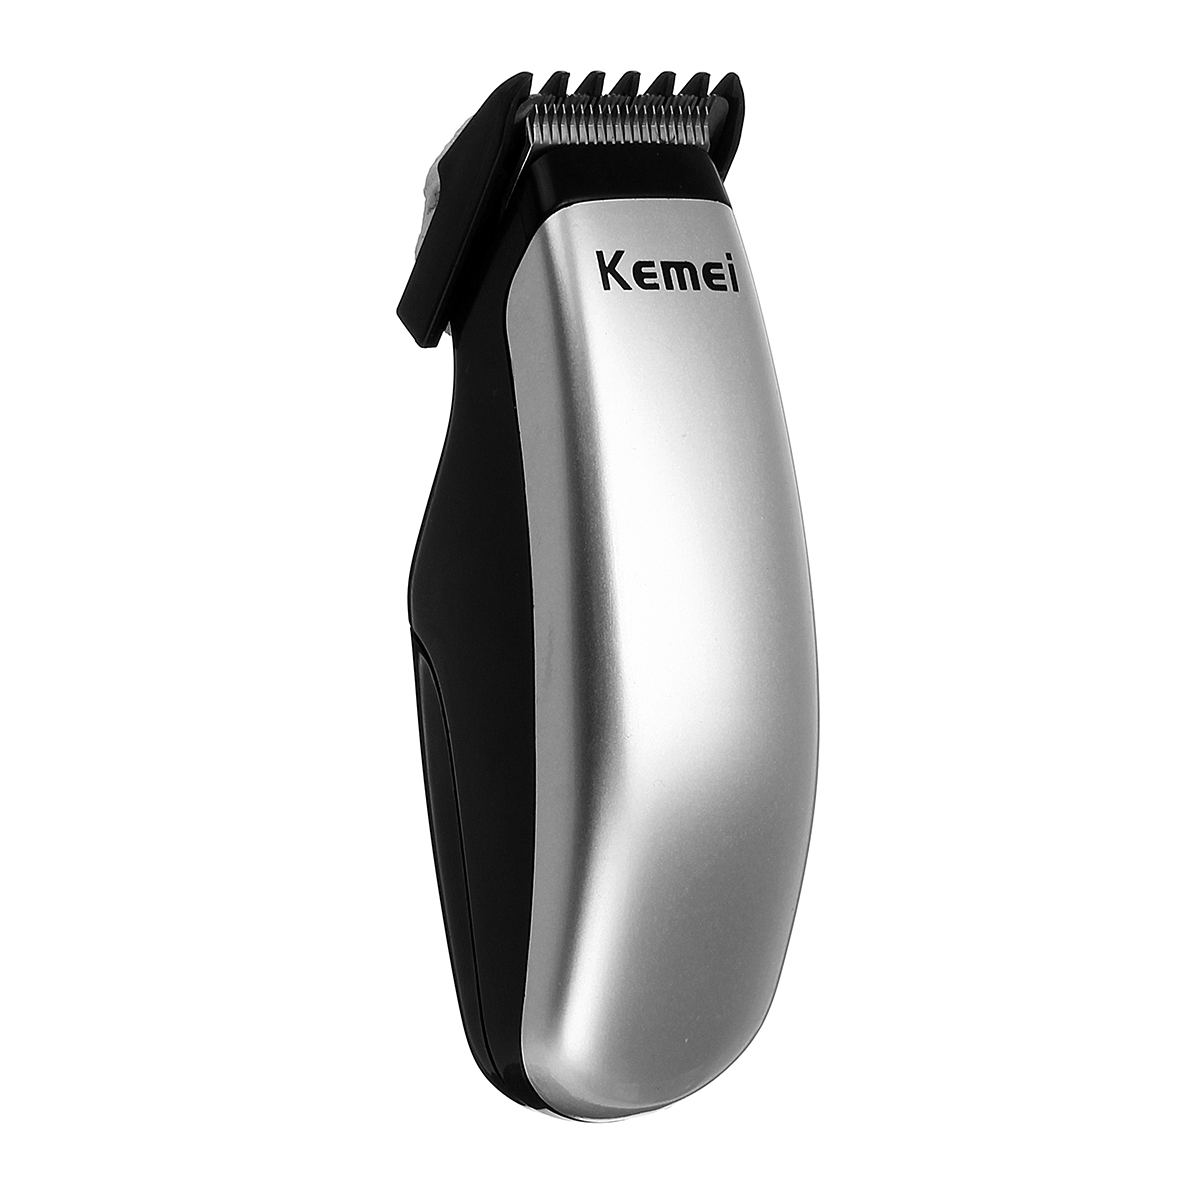 

Kemei KM-666 Mini Electric Волосы Clipper